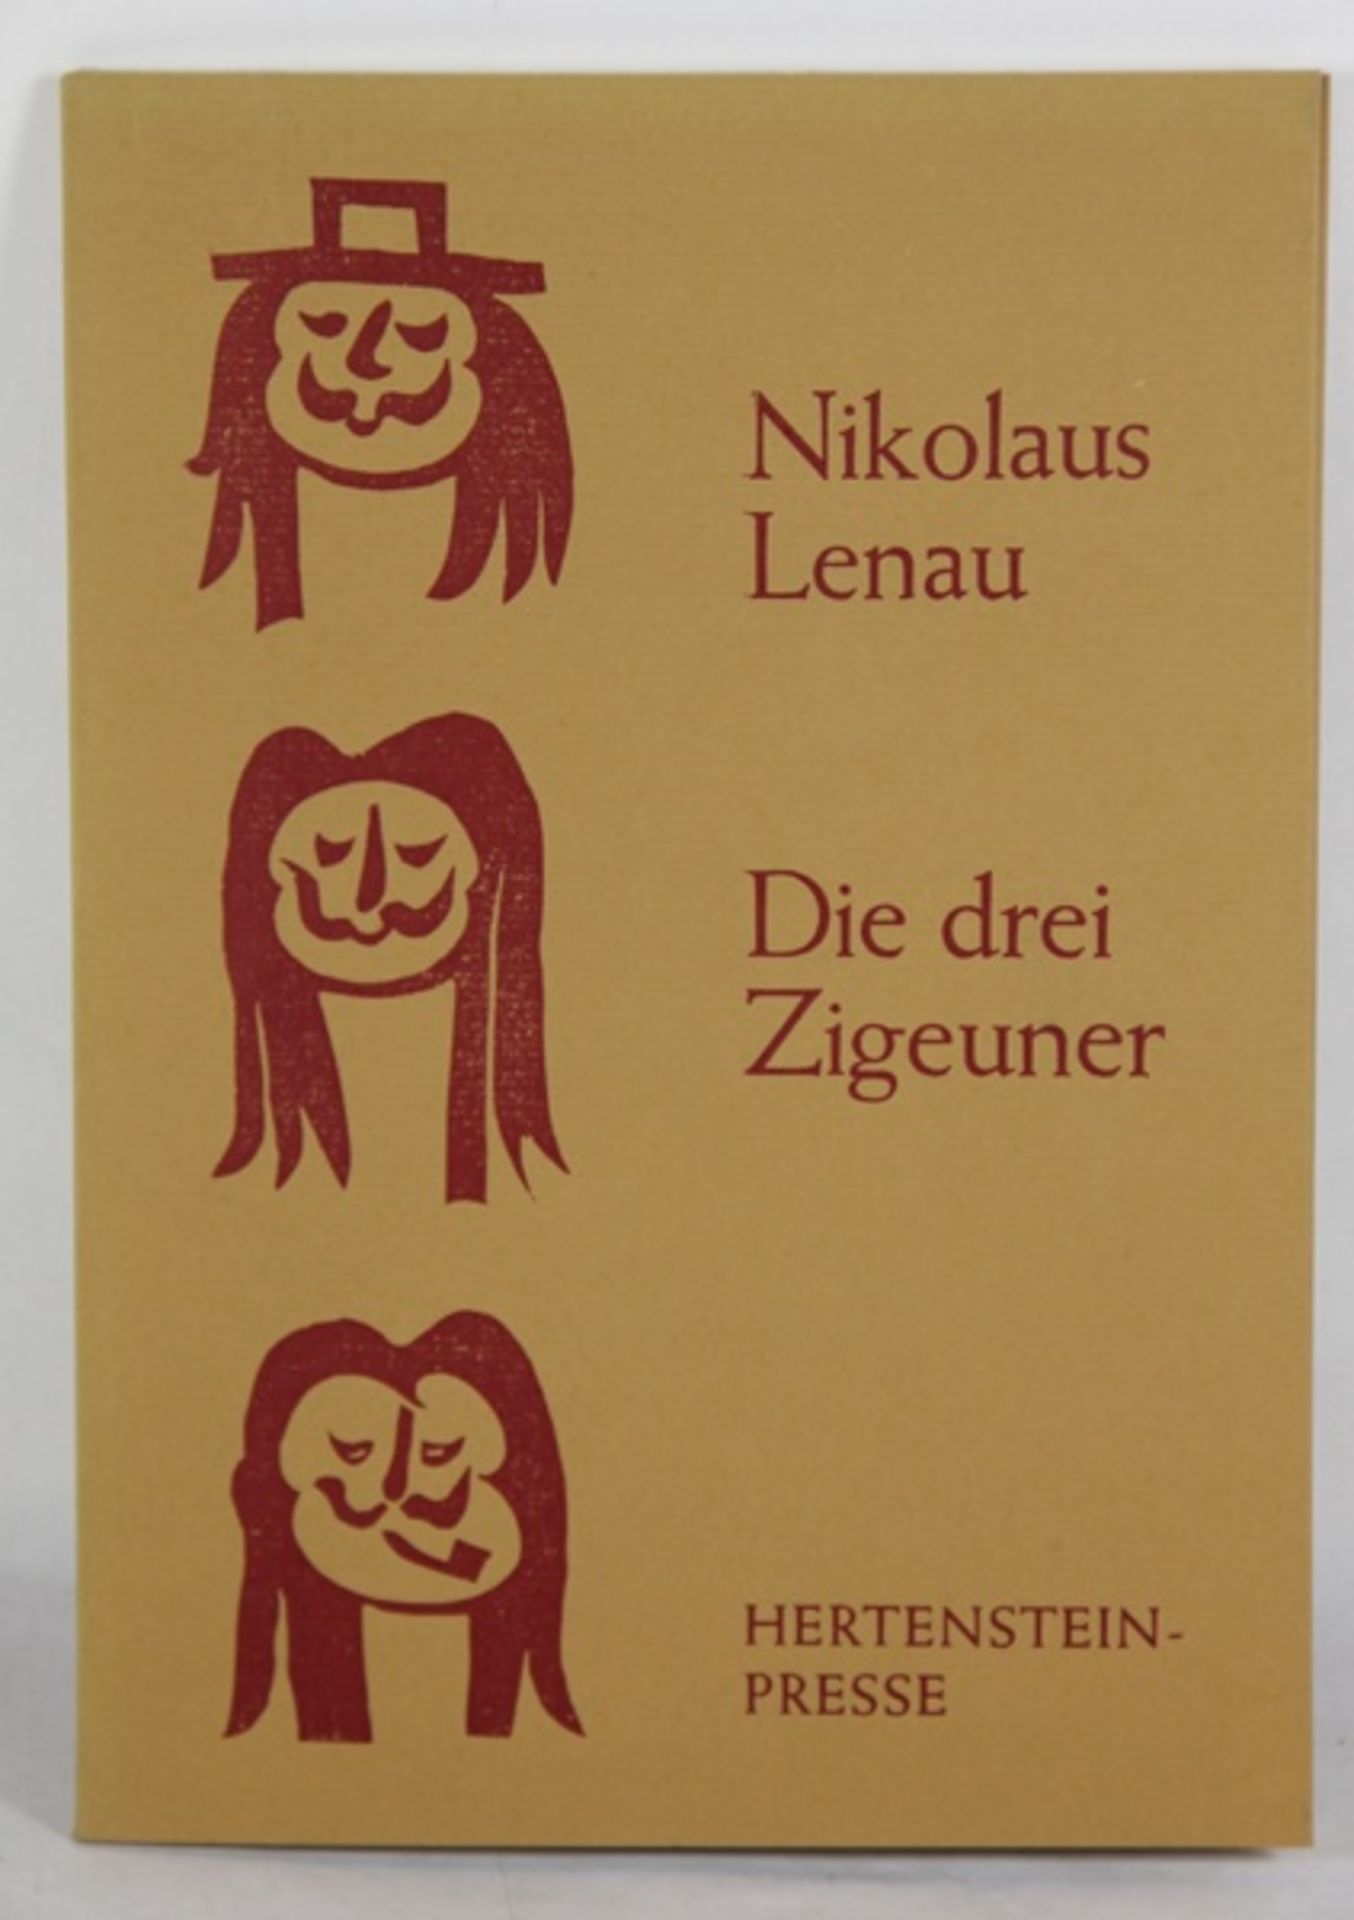 Nikolaus Lenau Kunstbuch Hertenstein